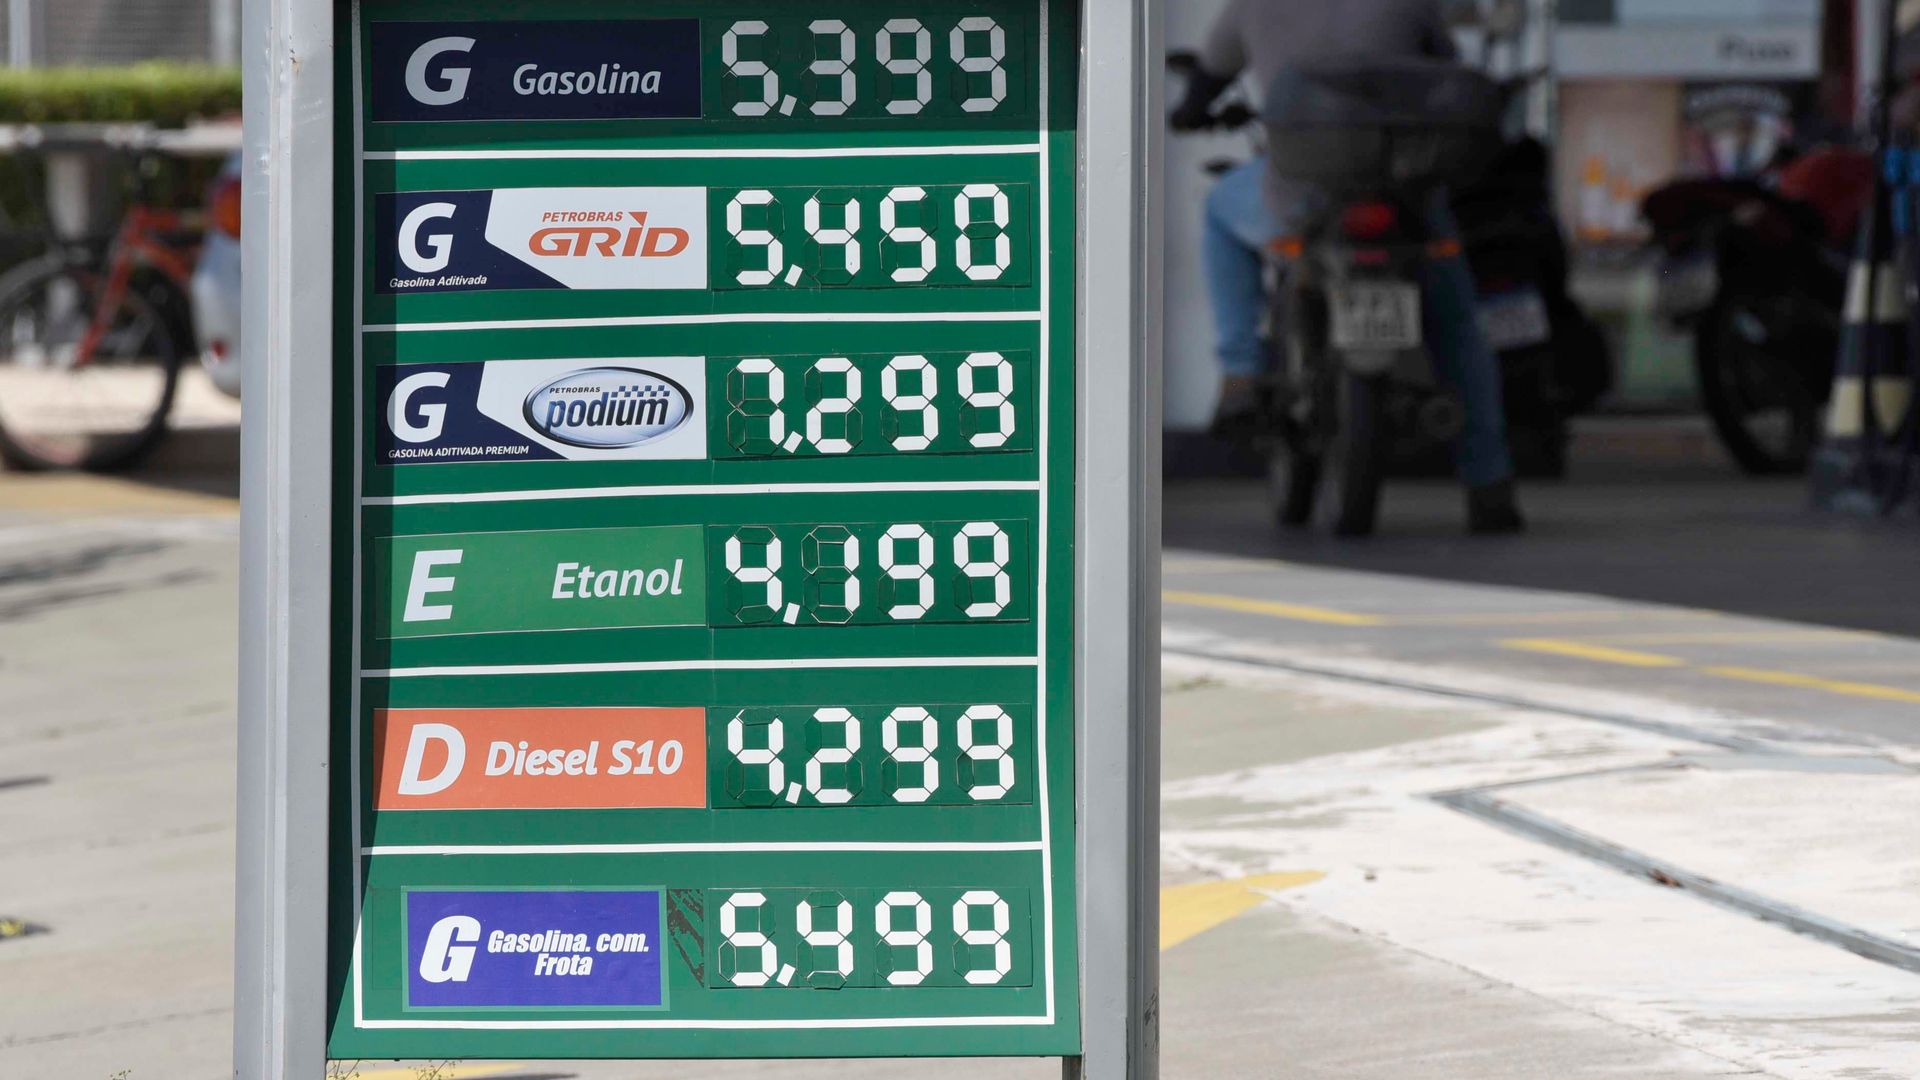 22/02/2022 - Preços de combustíveis em posto na avenida Dante Michelini, Jardim da Penha